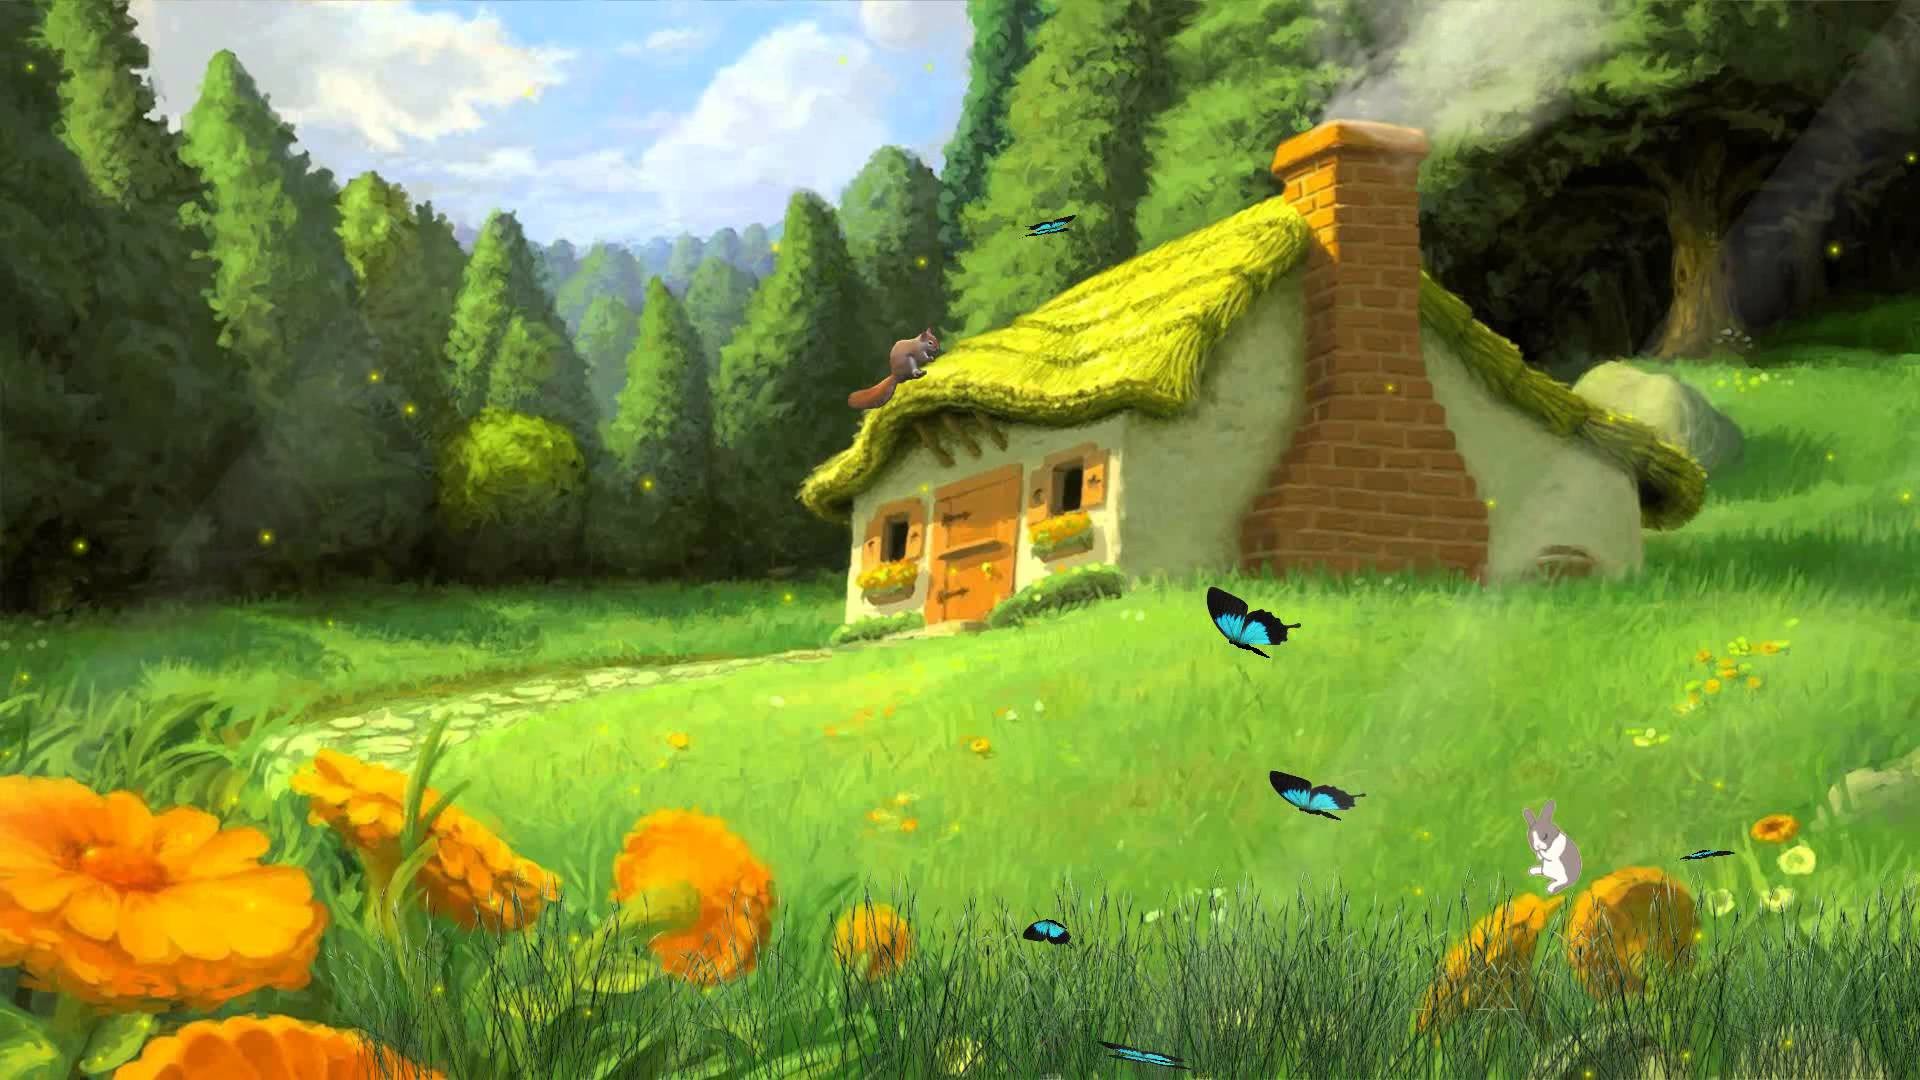 1920x1080 Tale Houses Animated Wallpaper http://www.desktopanimated.com/ - YouTube